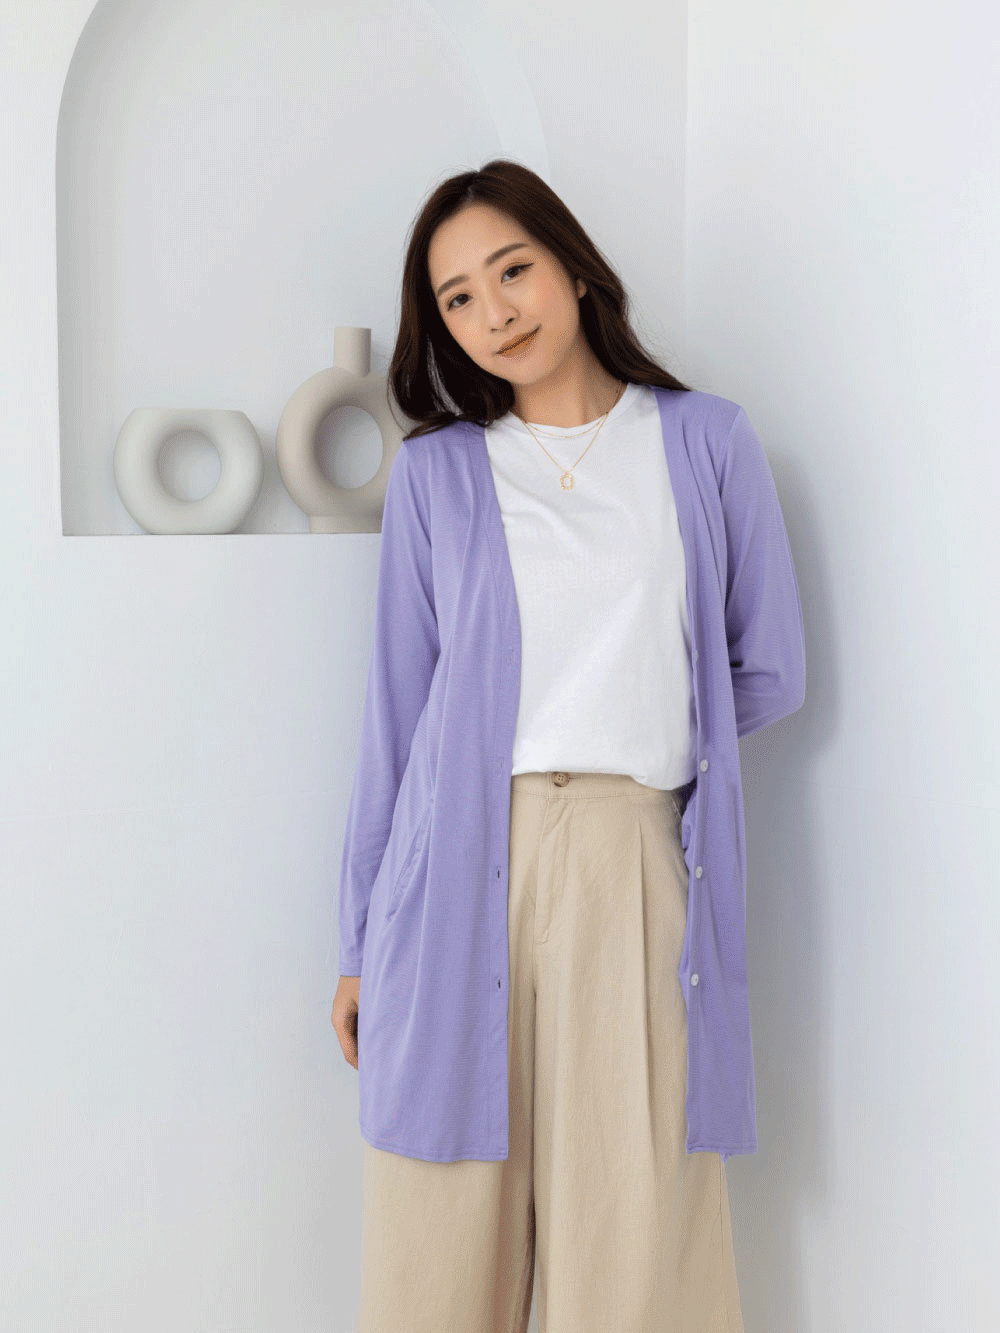 貝柔日本水潤白抗UV保濕防曬長版罩衫-丁香紫